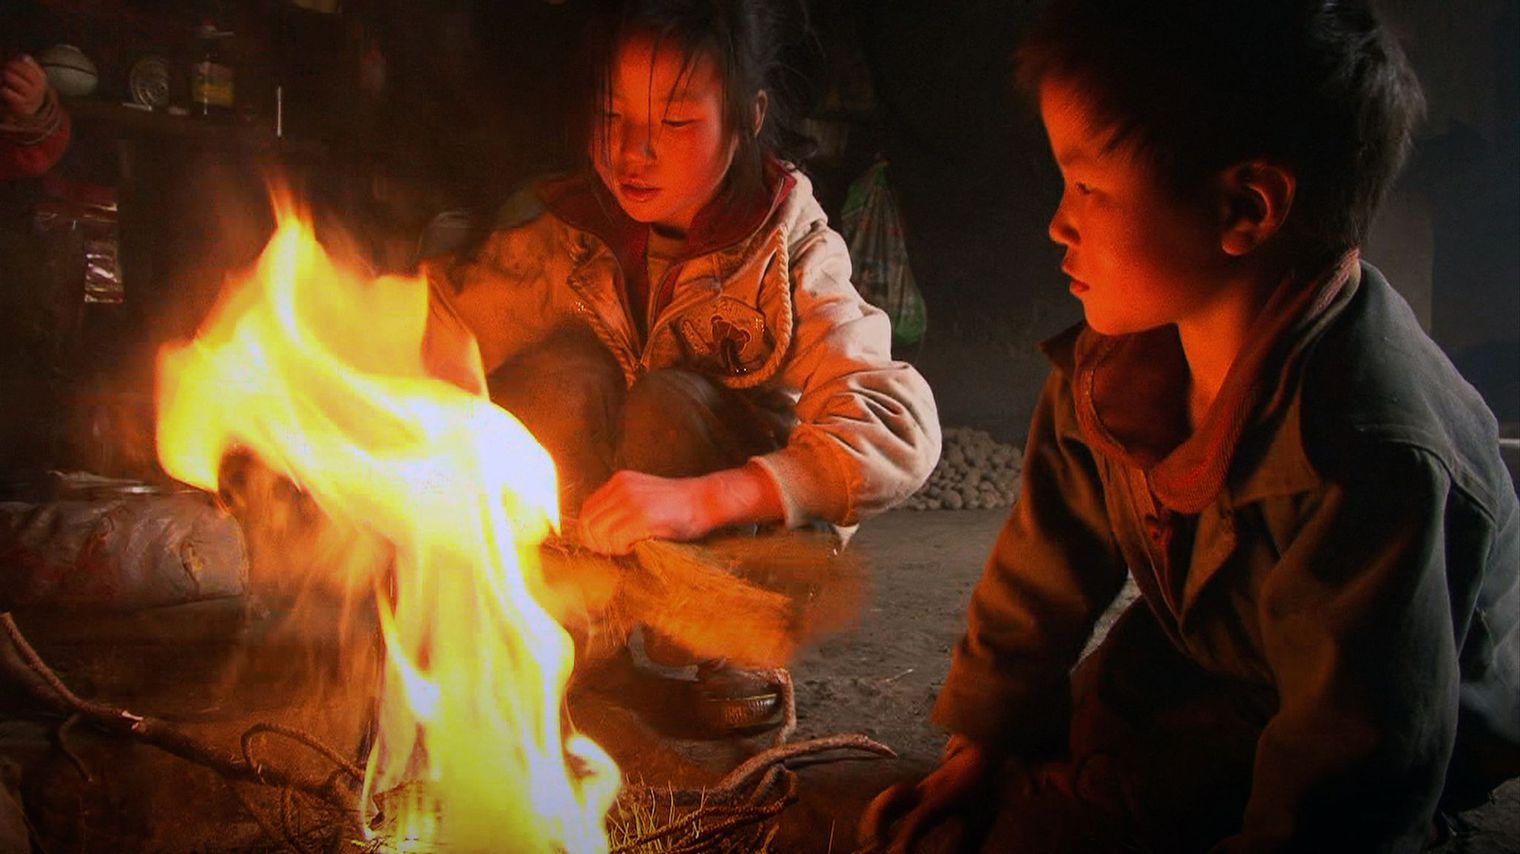 Les Trois soeurs-du Yunnan (Wang Bing, 2013).